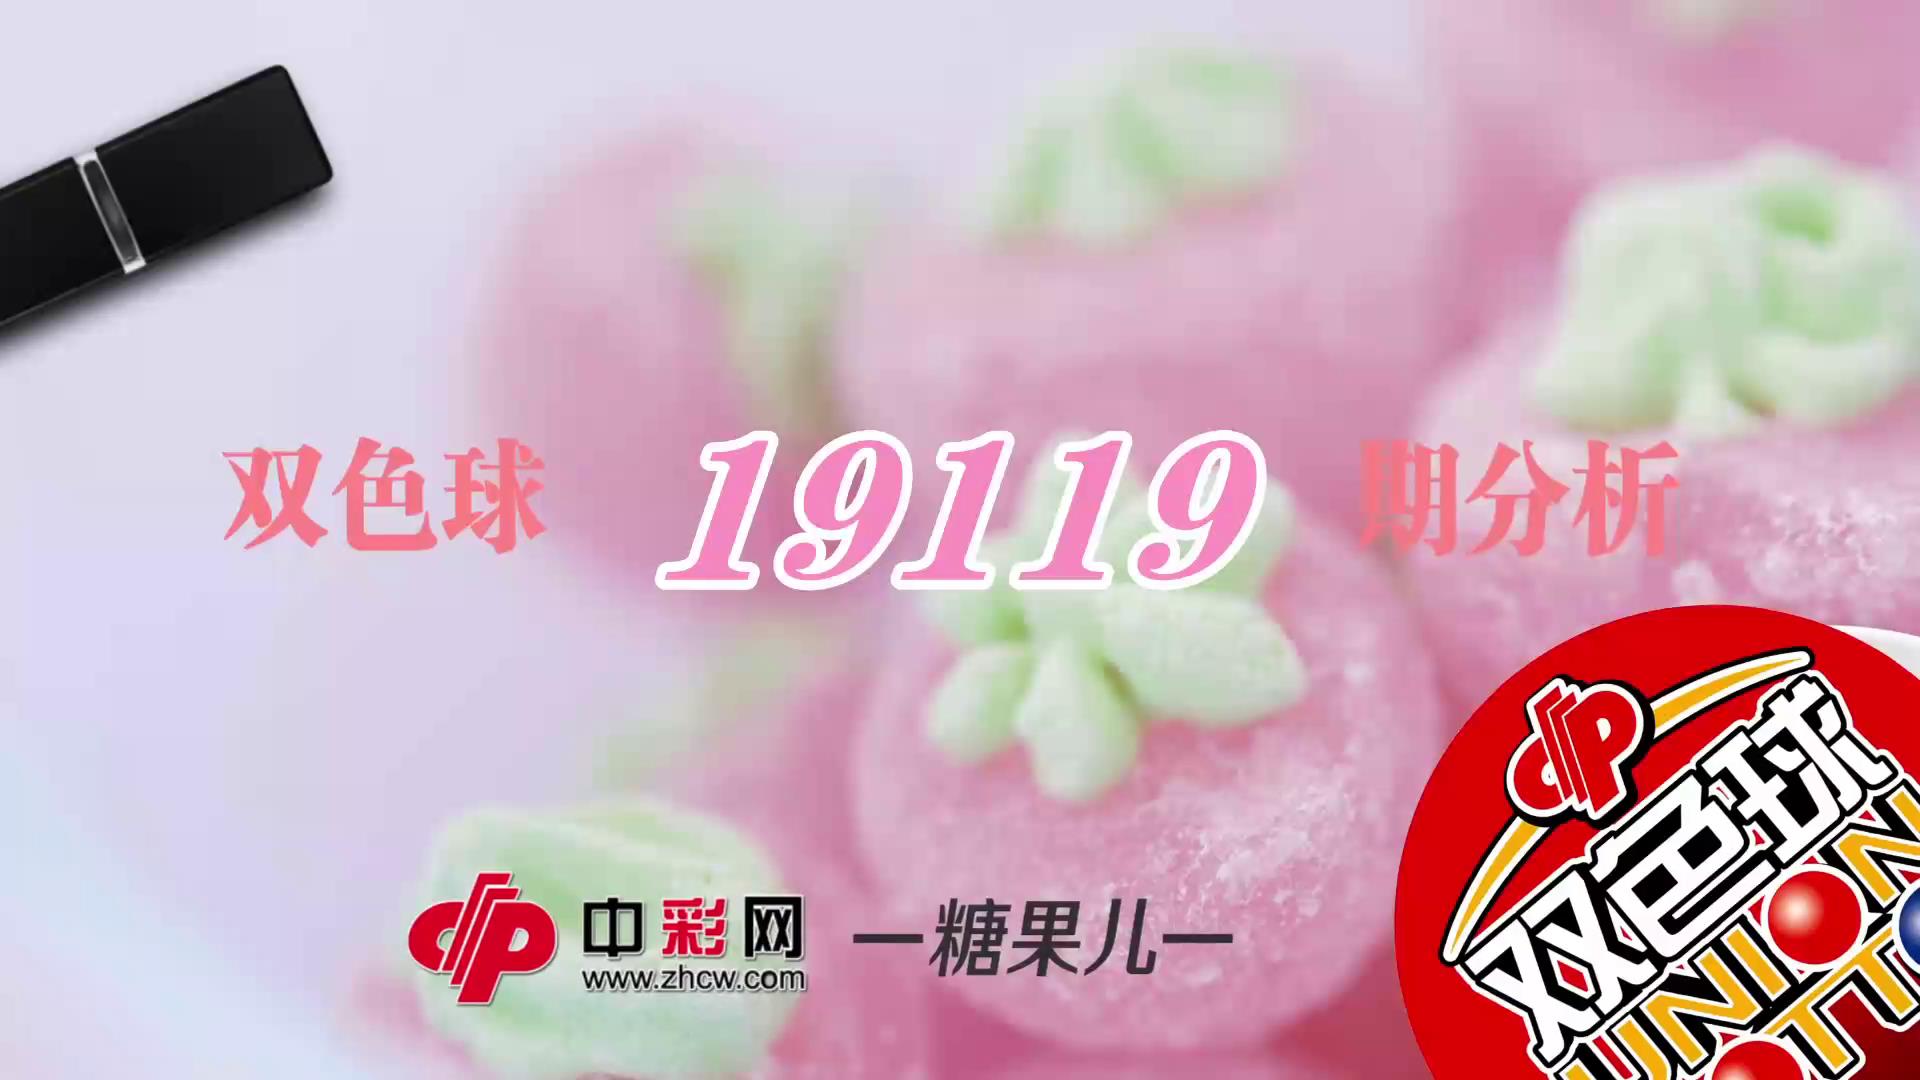 【中彩视频】糖果儿双色球第19119期